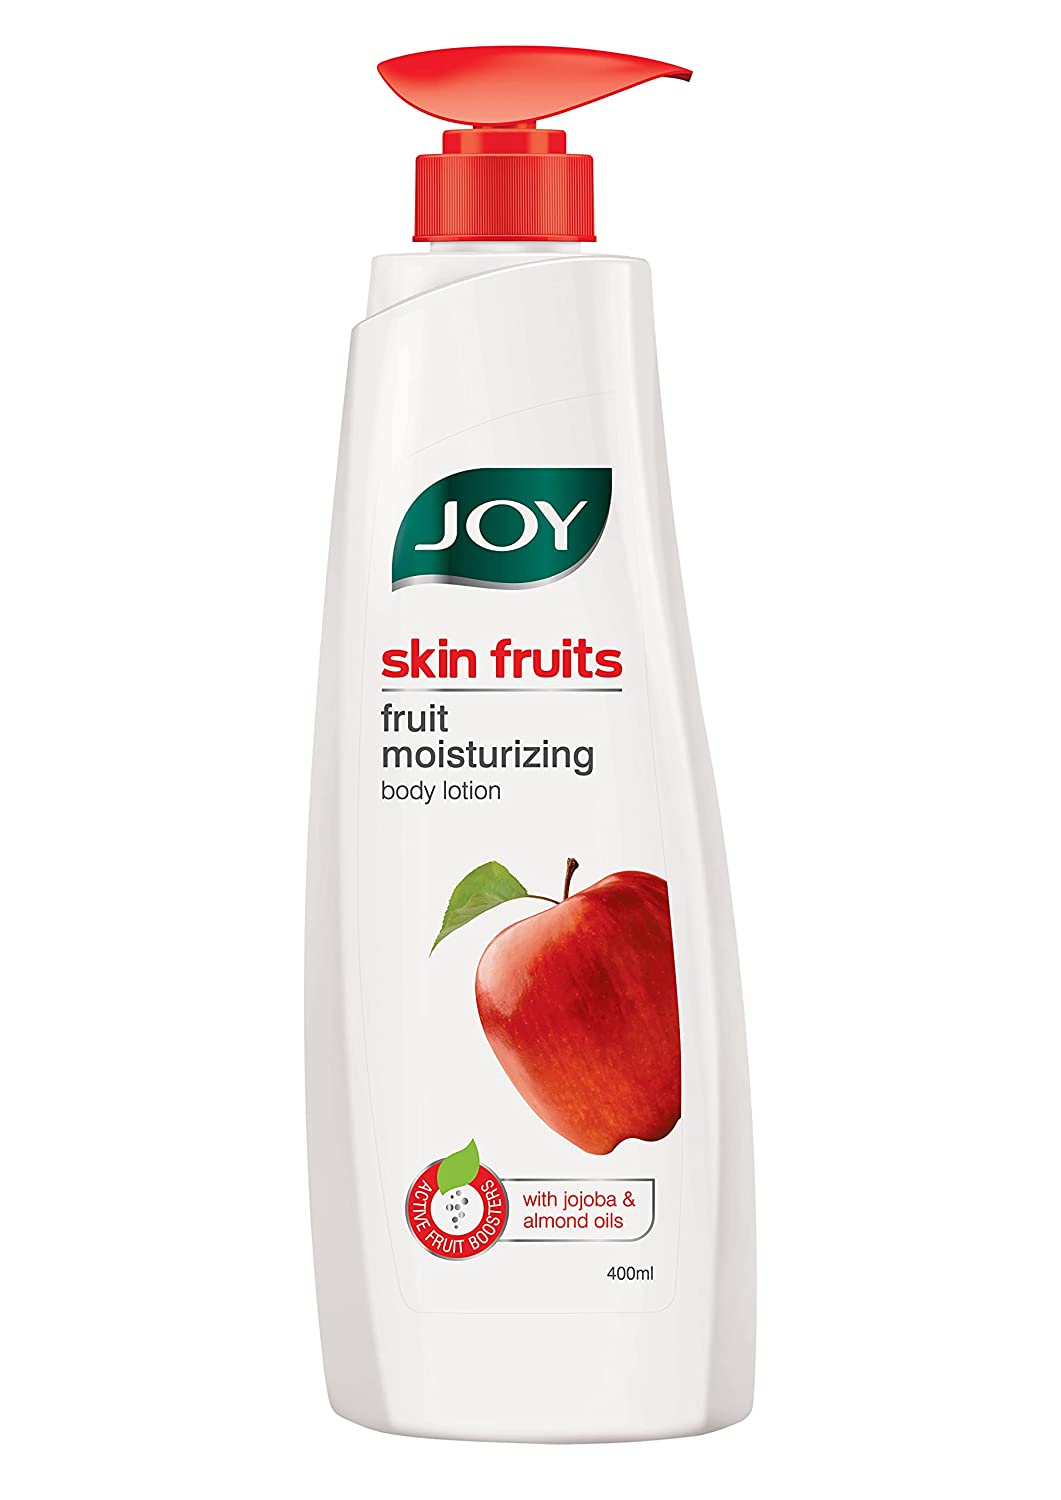 Joy Skin Fruits Fruit Moisturizing Body Lotion For All Skin Types - 400ml, Joy Skin Fruits Fruit Moisturizing Body Lotion , body lotion